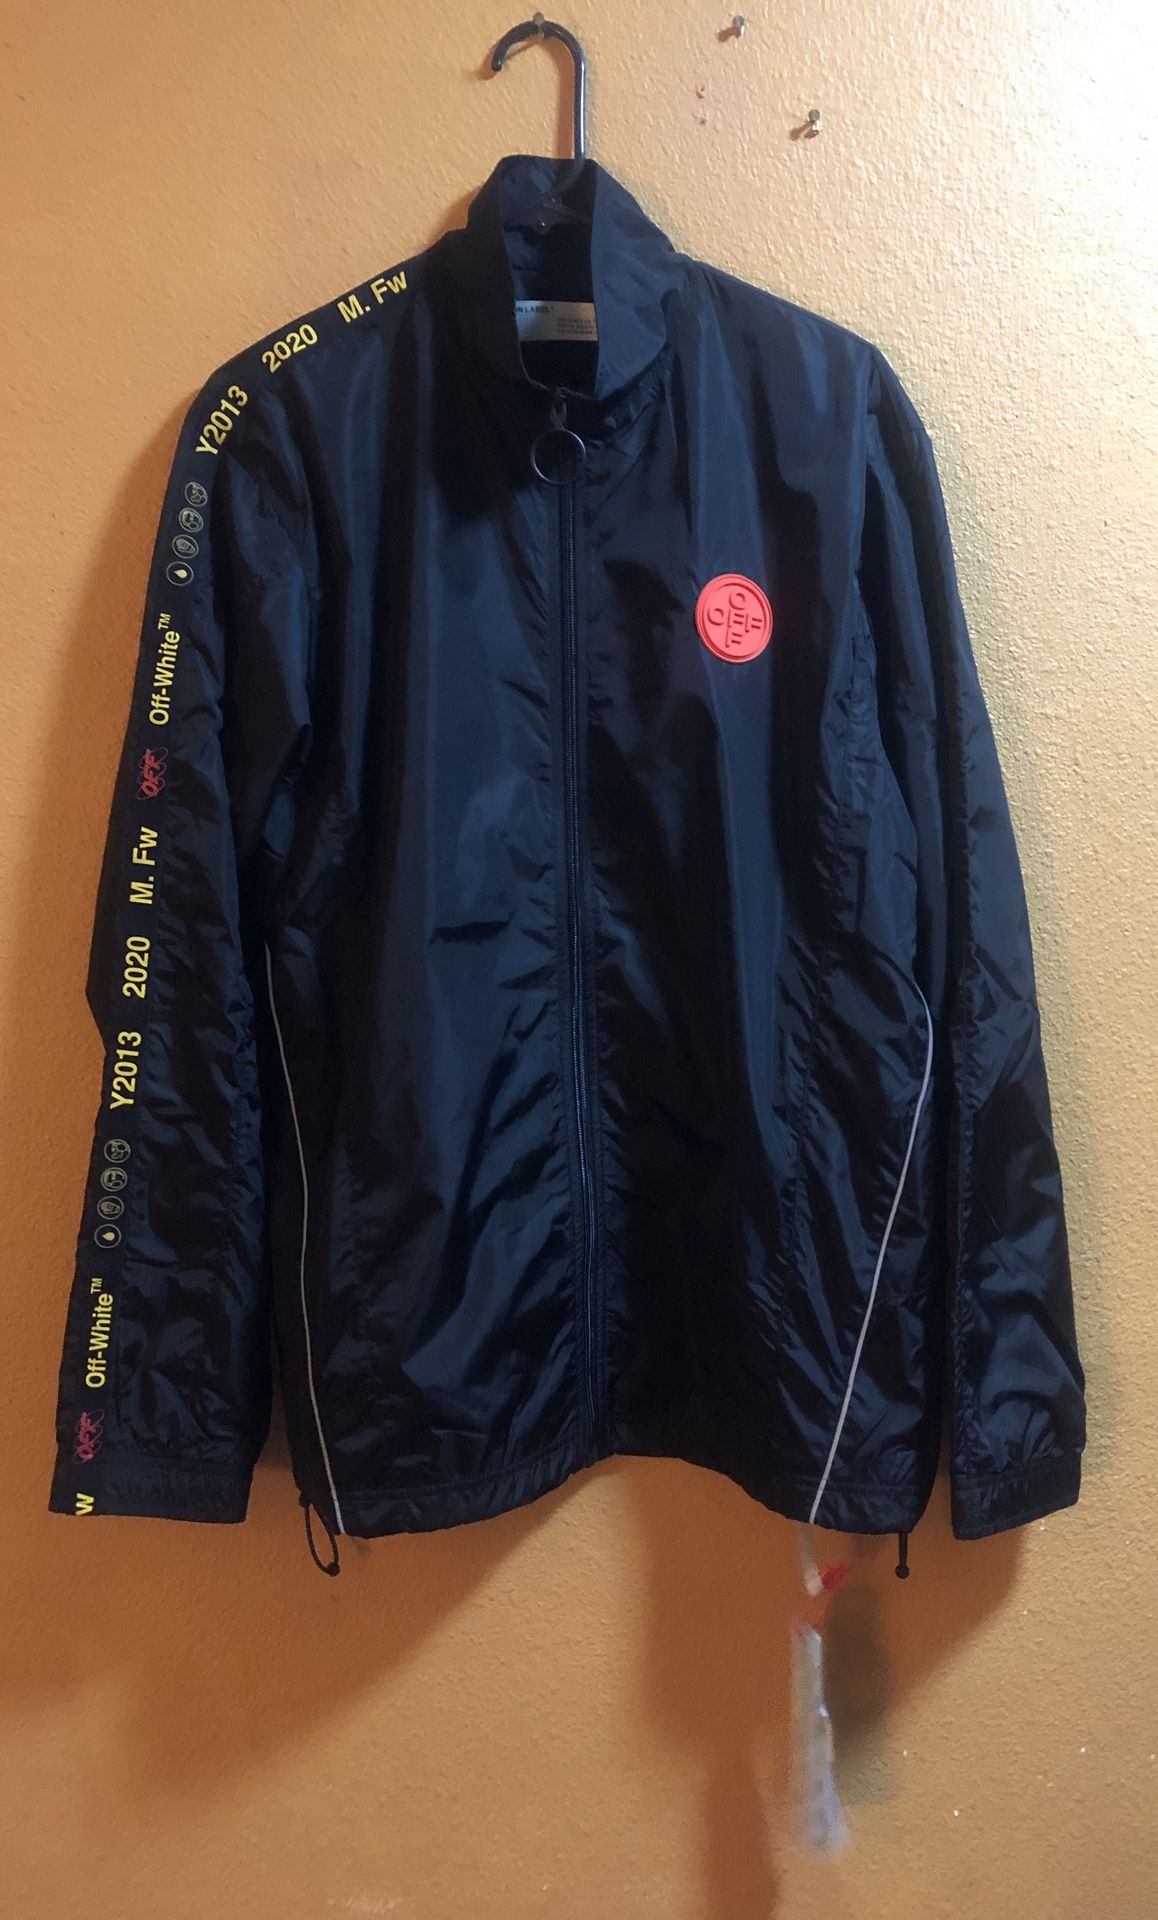 BRAND NEW‼️ OFF-WHITE Nylon Track Jacket (Men’s size L)